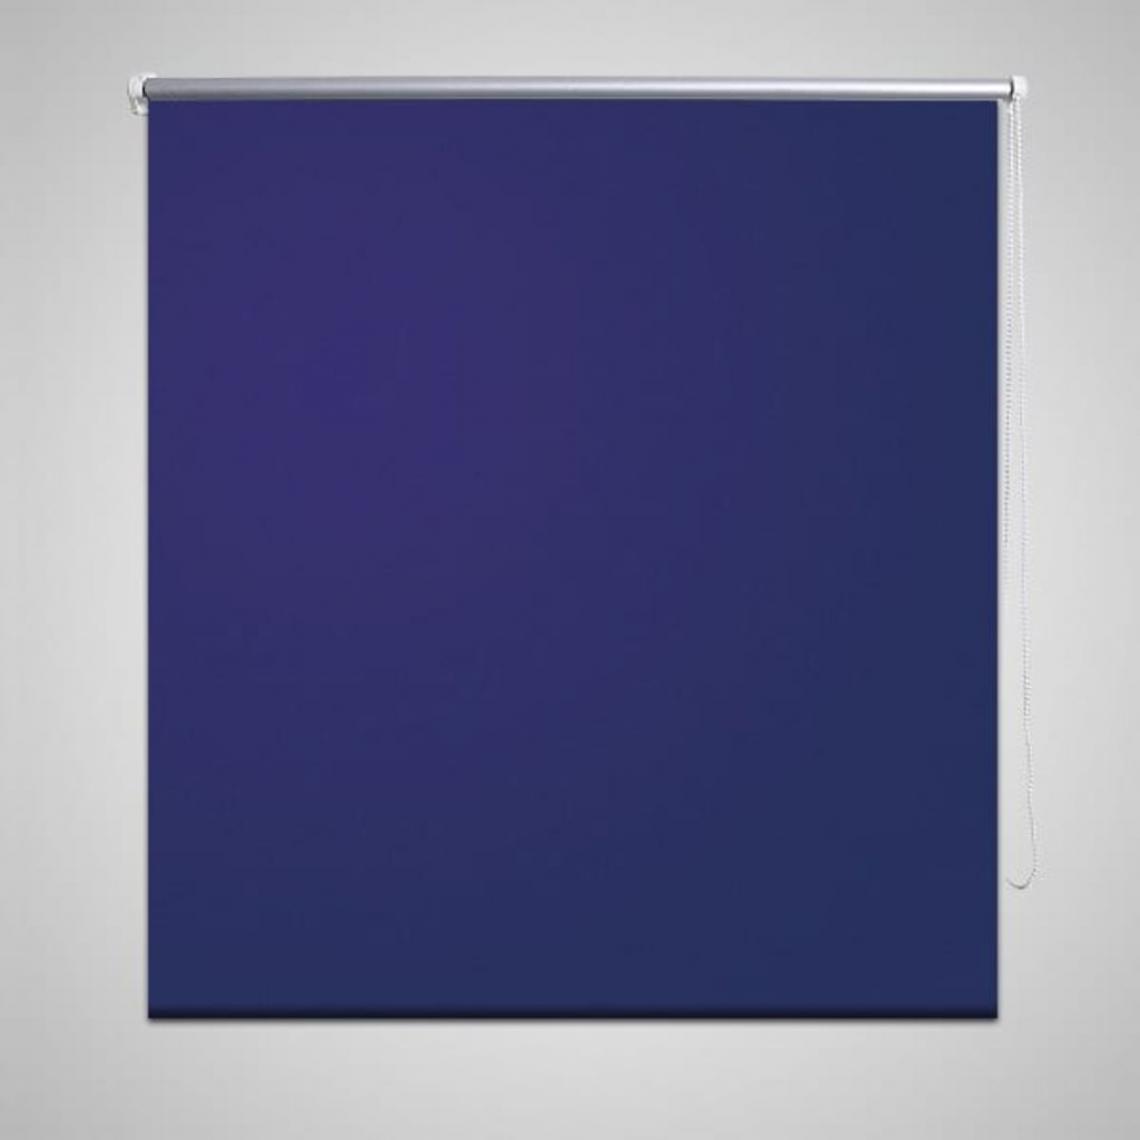 Hucoco - Store enrouleur occultant 80 x 230 cm bleu - Bleu - Store compatible Velux